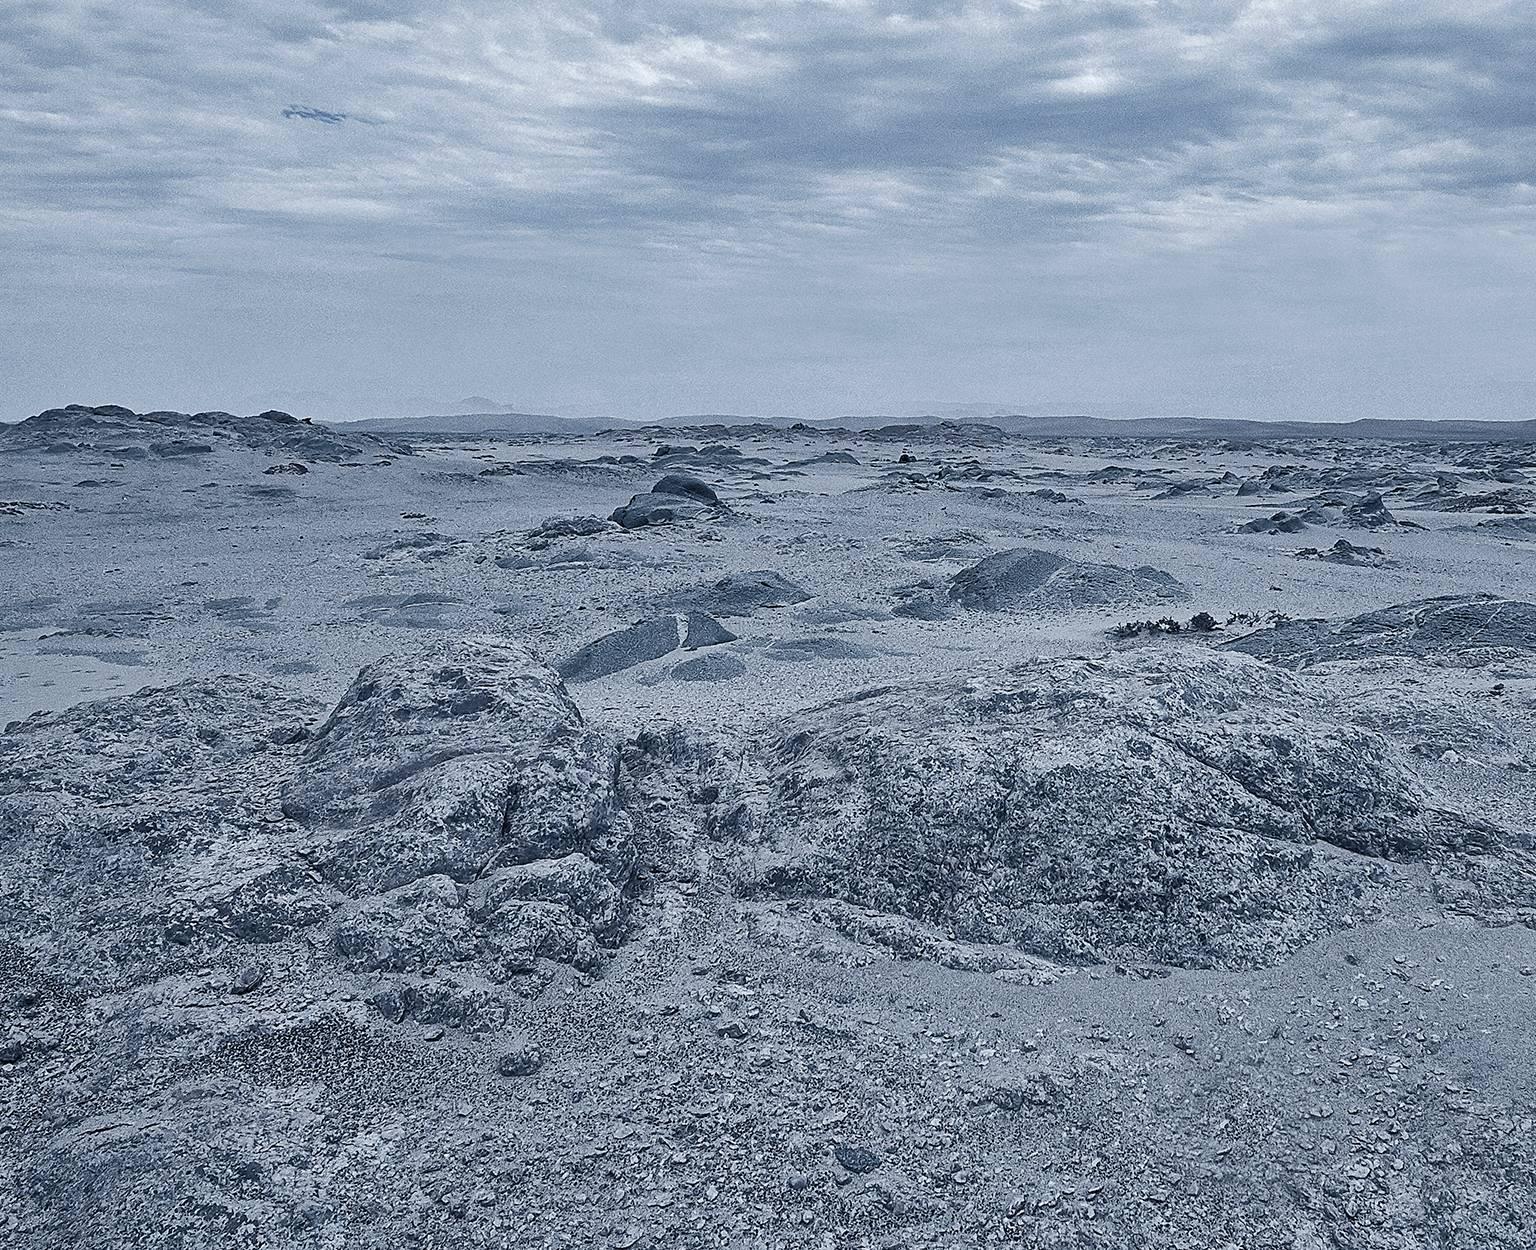 Skeleton Coast 2, Namibia - Photograph by Chris Gordaneer